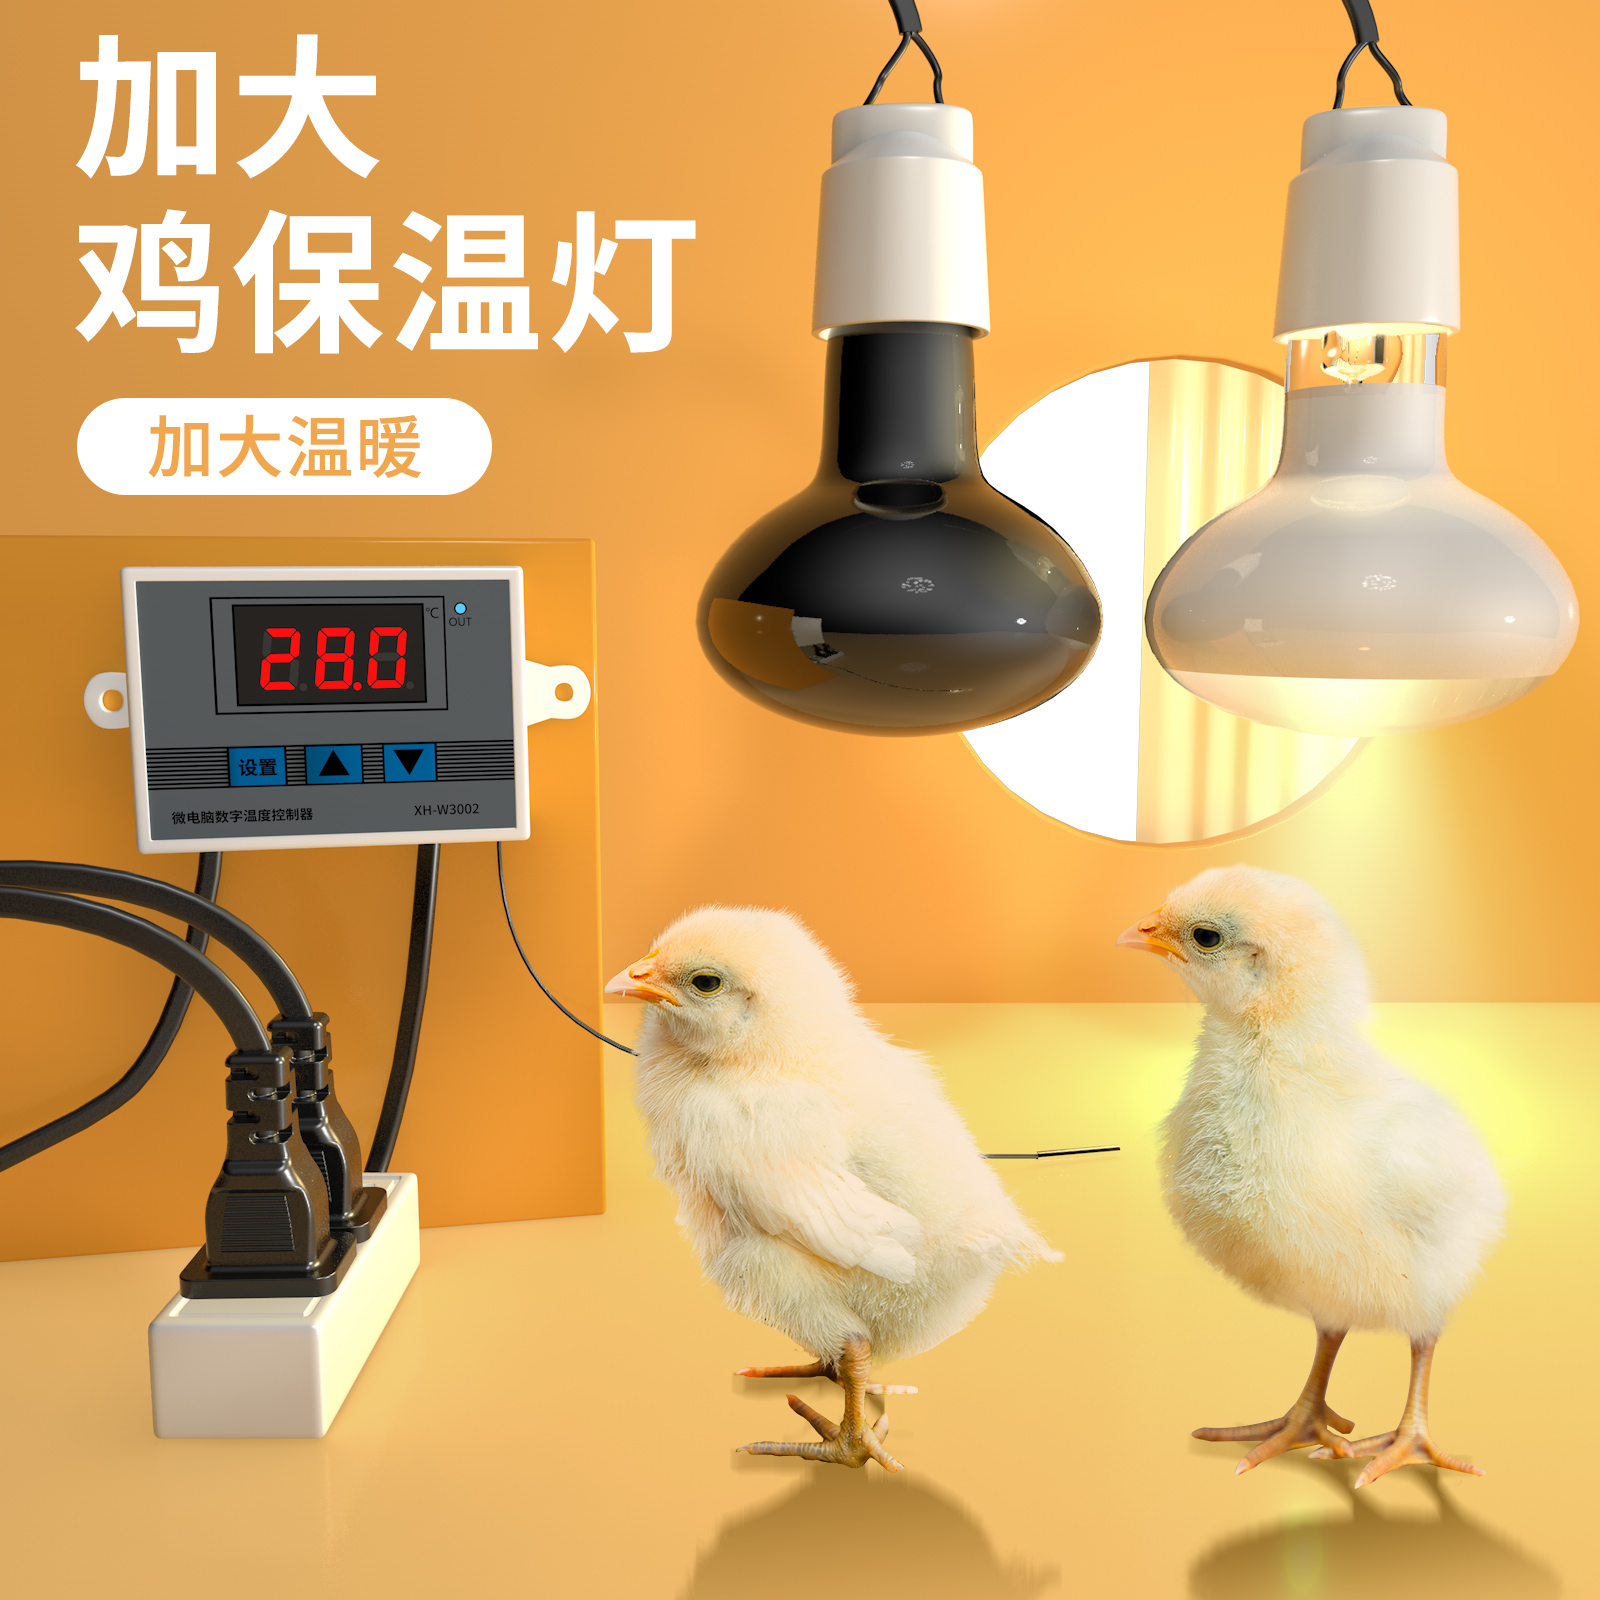 保温灯泡芦丁鸡鹌鹑取暖加温灯宠物育雏灯小鸡保暖加热灯卢丁鸡灯